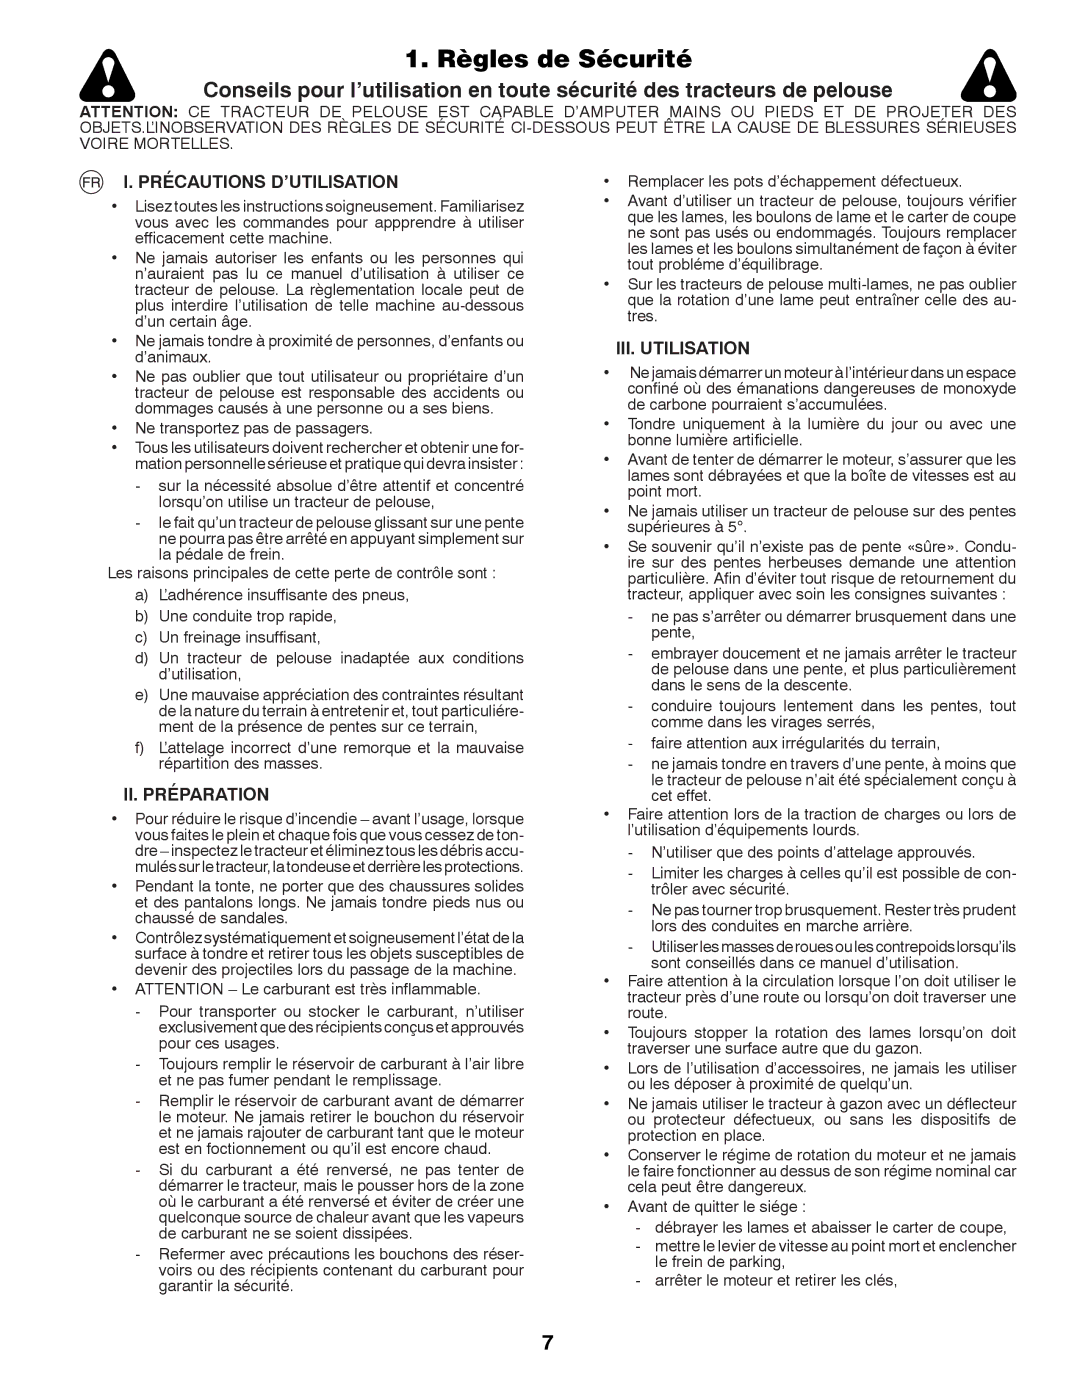 Husqvarna LTH126 instruction manual Règles de Sécurité, Précautions D’UTILISATION, II. Préparation, III. Utilisation 